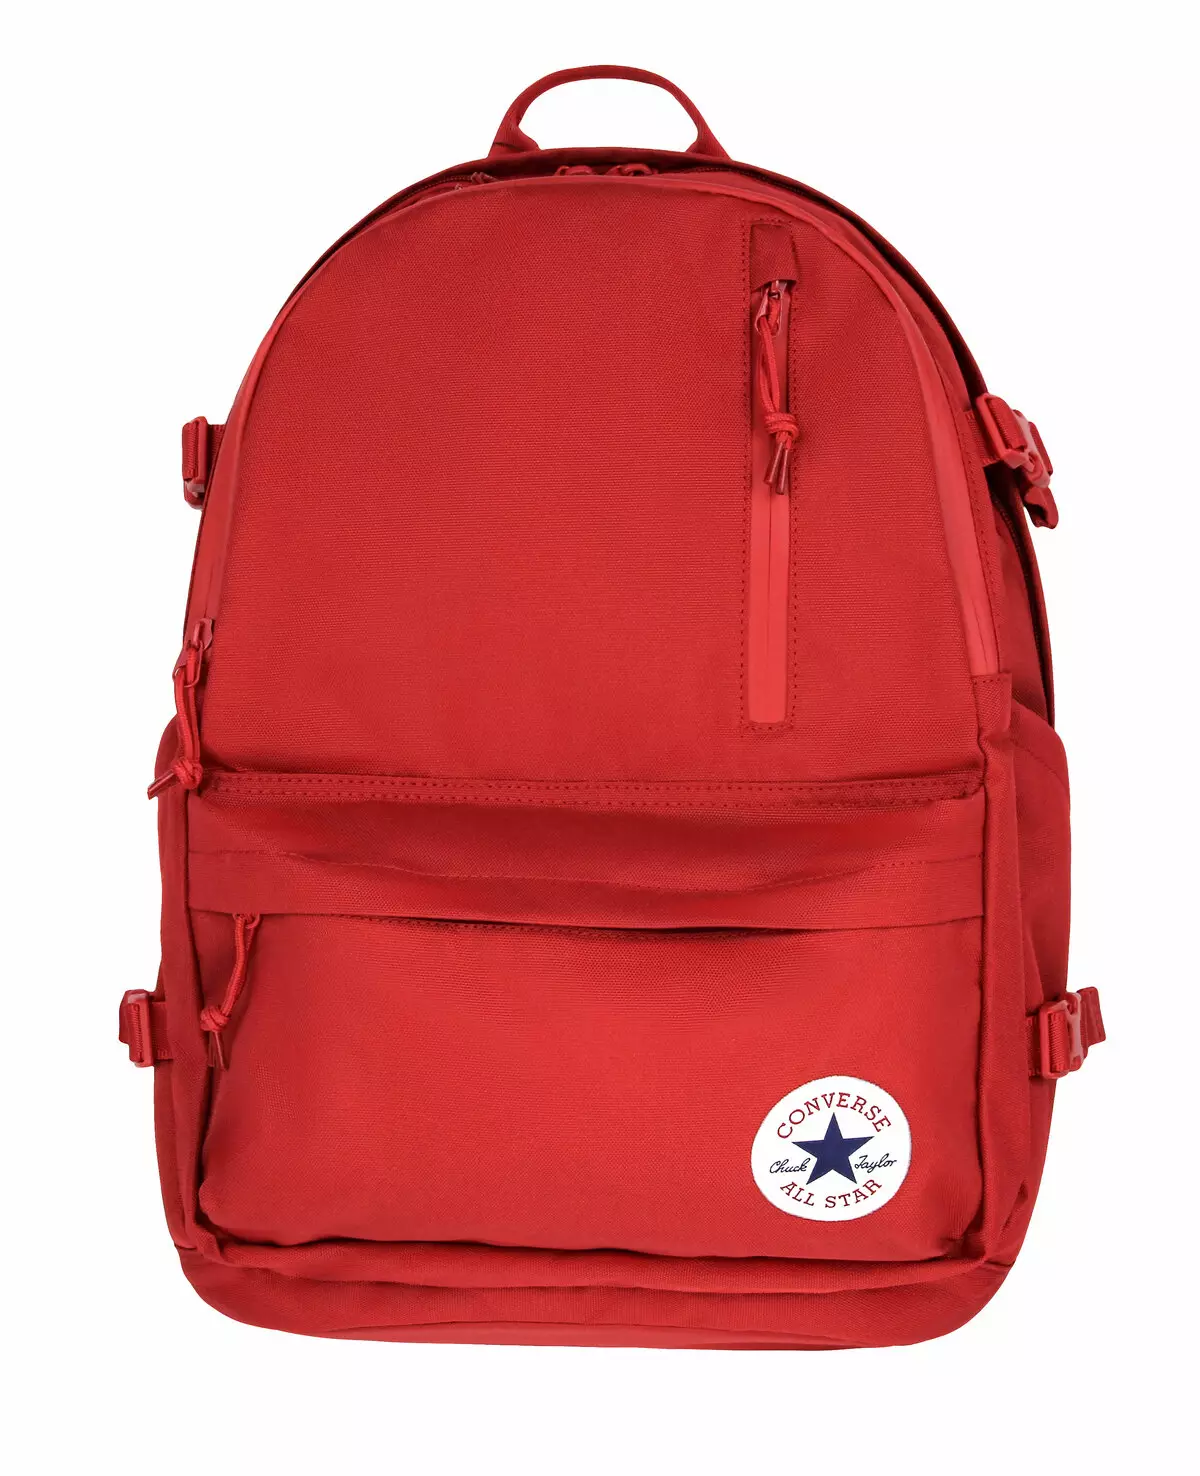 Converse backpacks: swart en blau, reade modellen, froulju en manlju, lear en denim stiet, resinsjes 15410_21